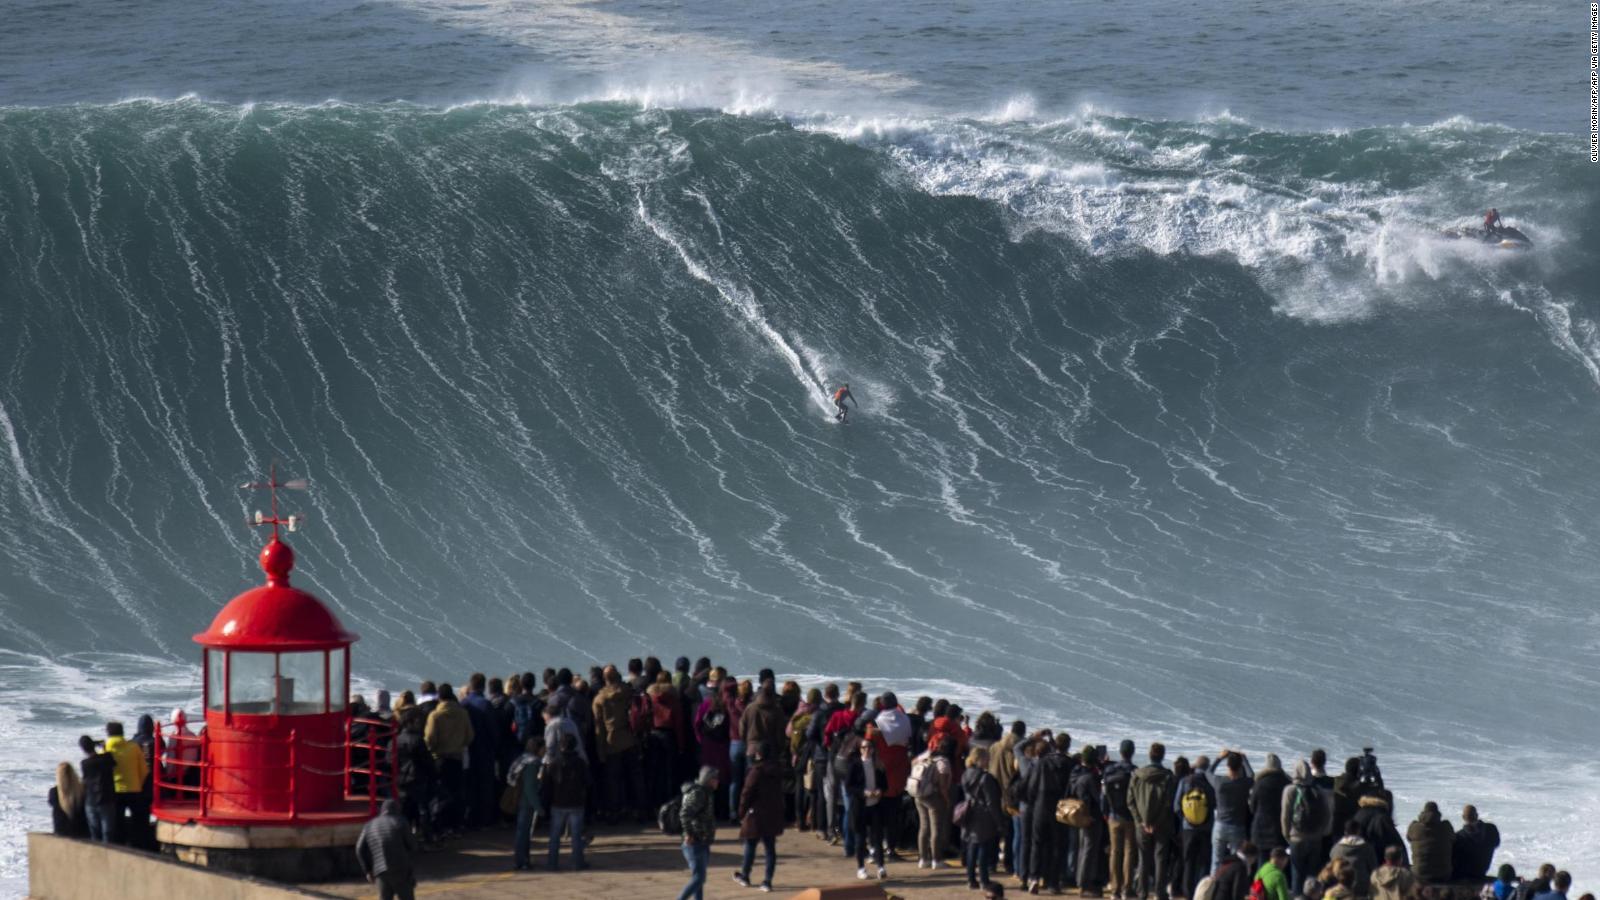 El surfista Alex Botelho en condición estable luego de accidente en las  olas | Video | CNN